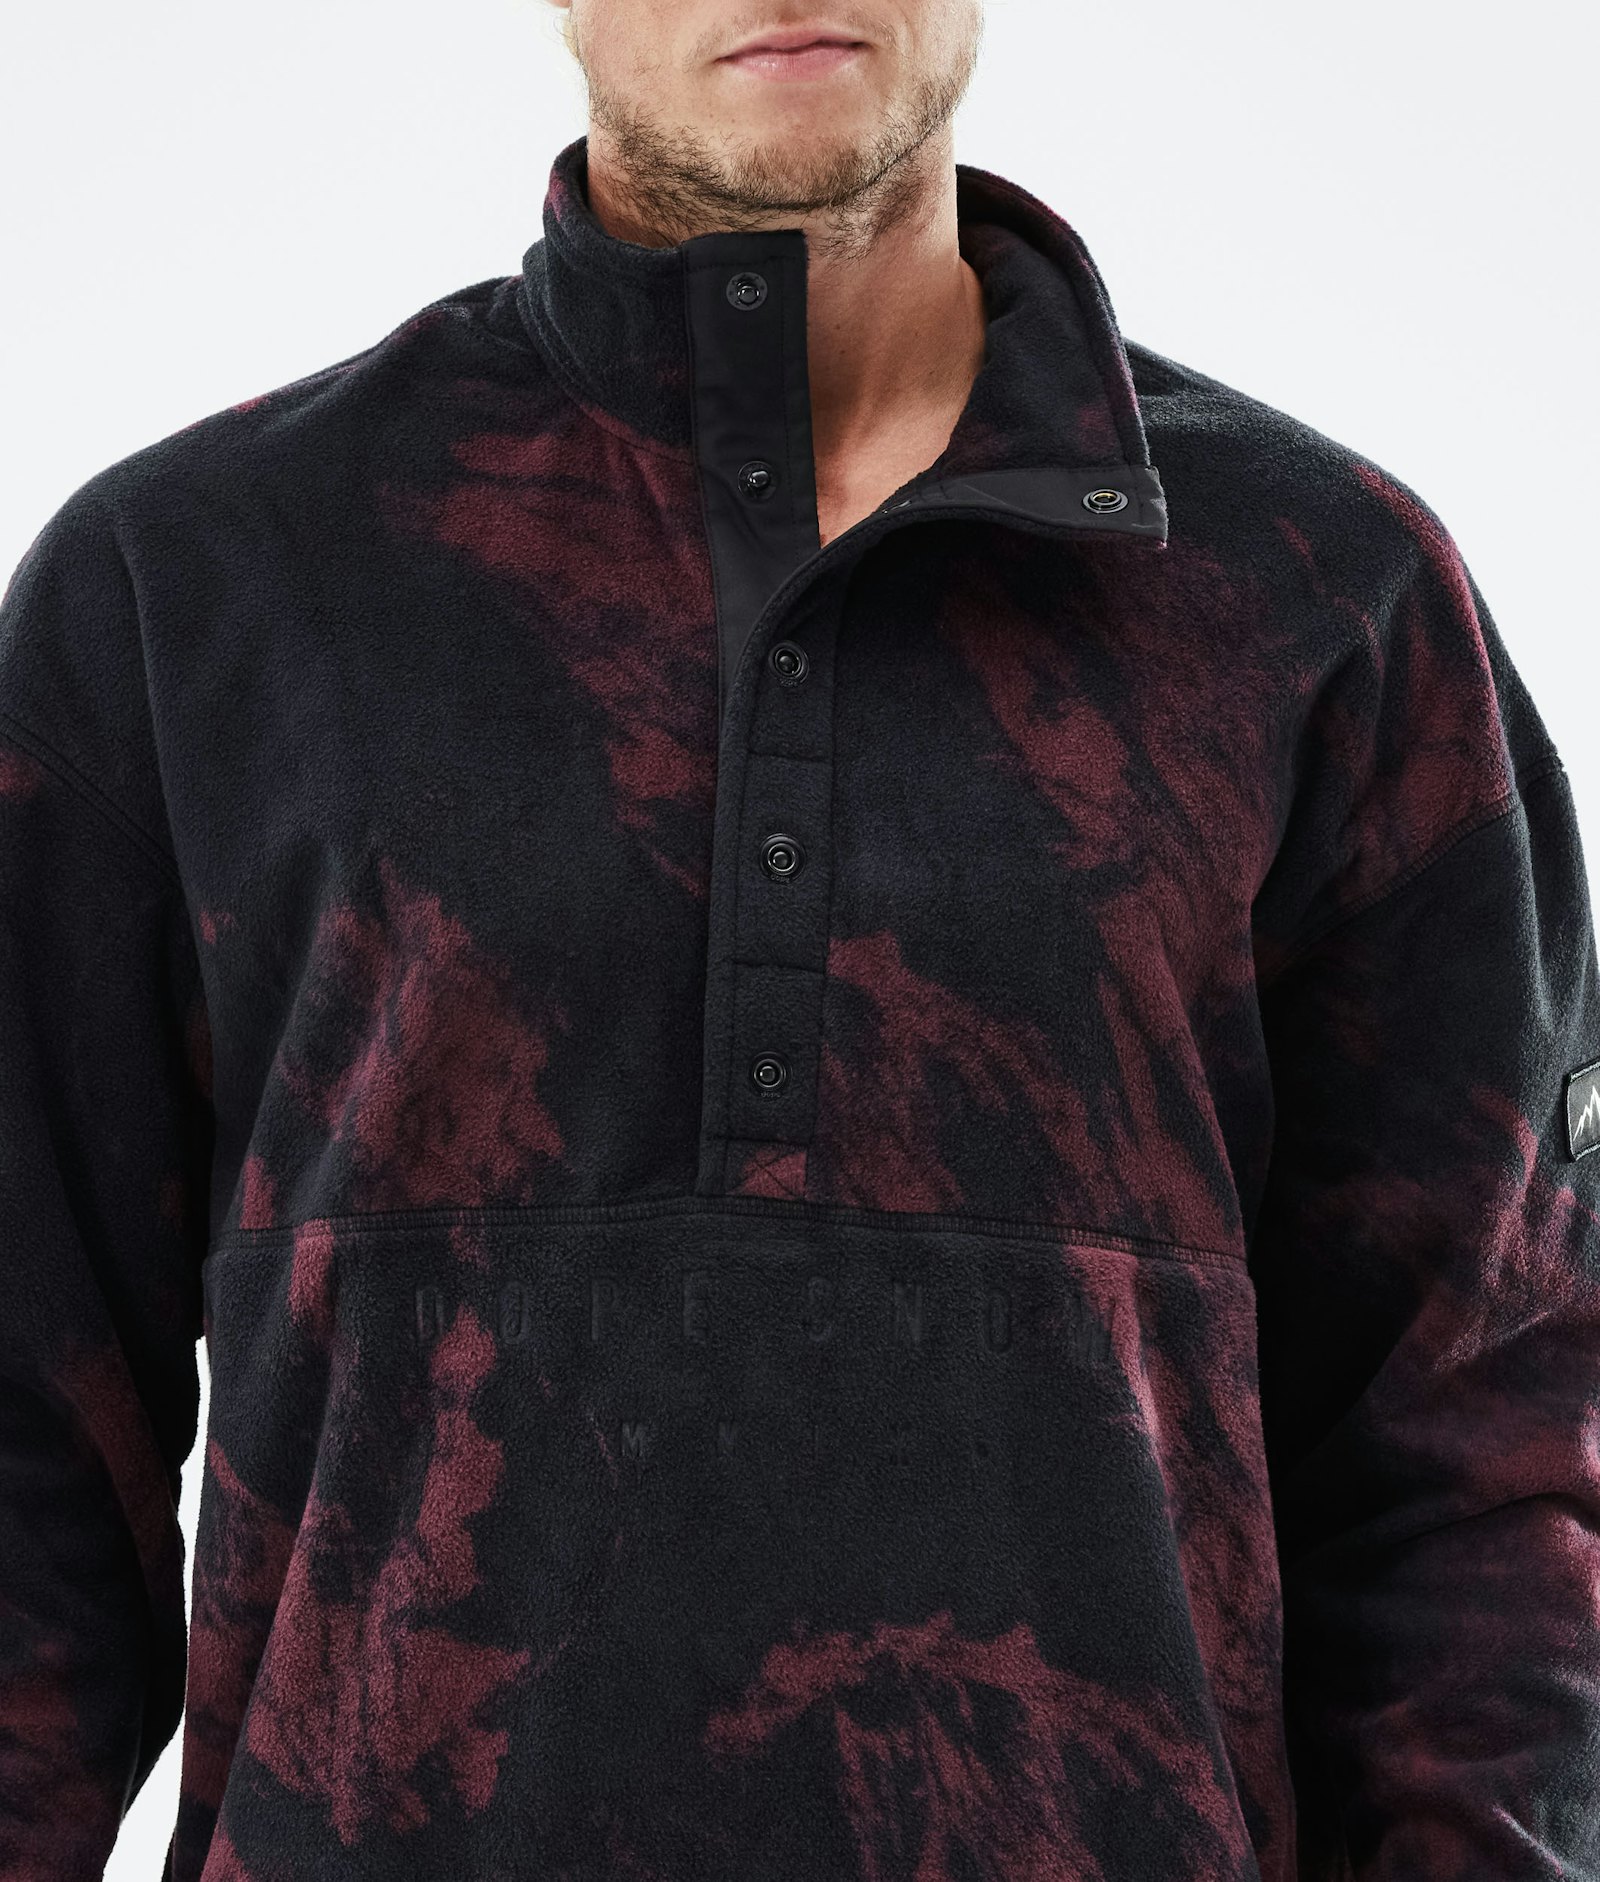 Dope Comfy 2021 Fleece Sweater Men Paint Burgundy